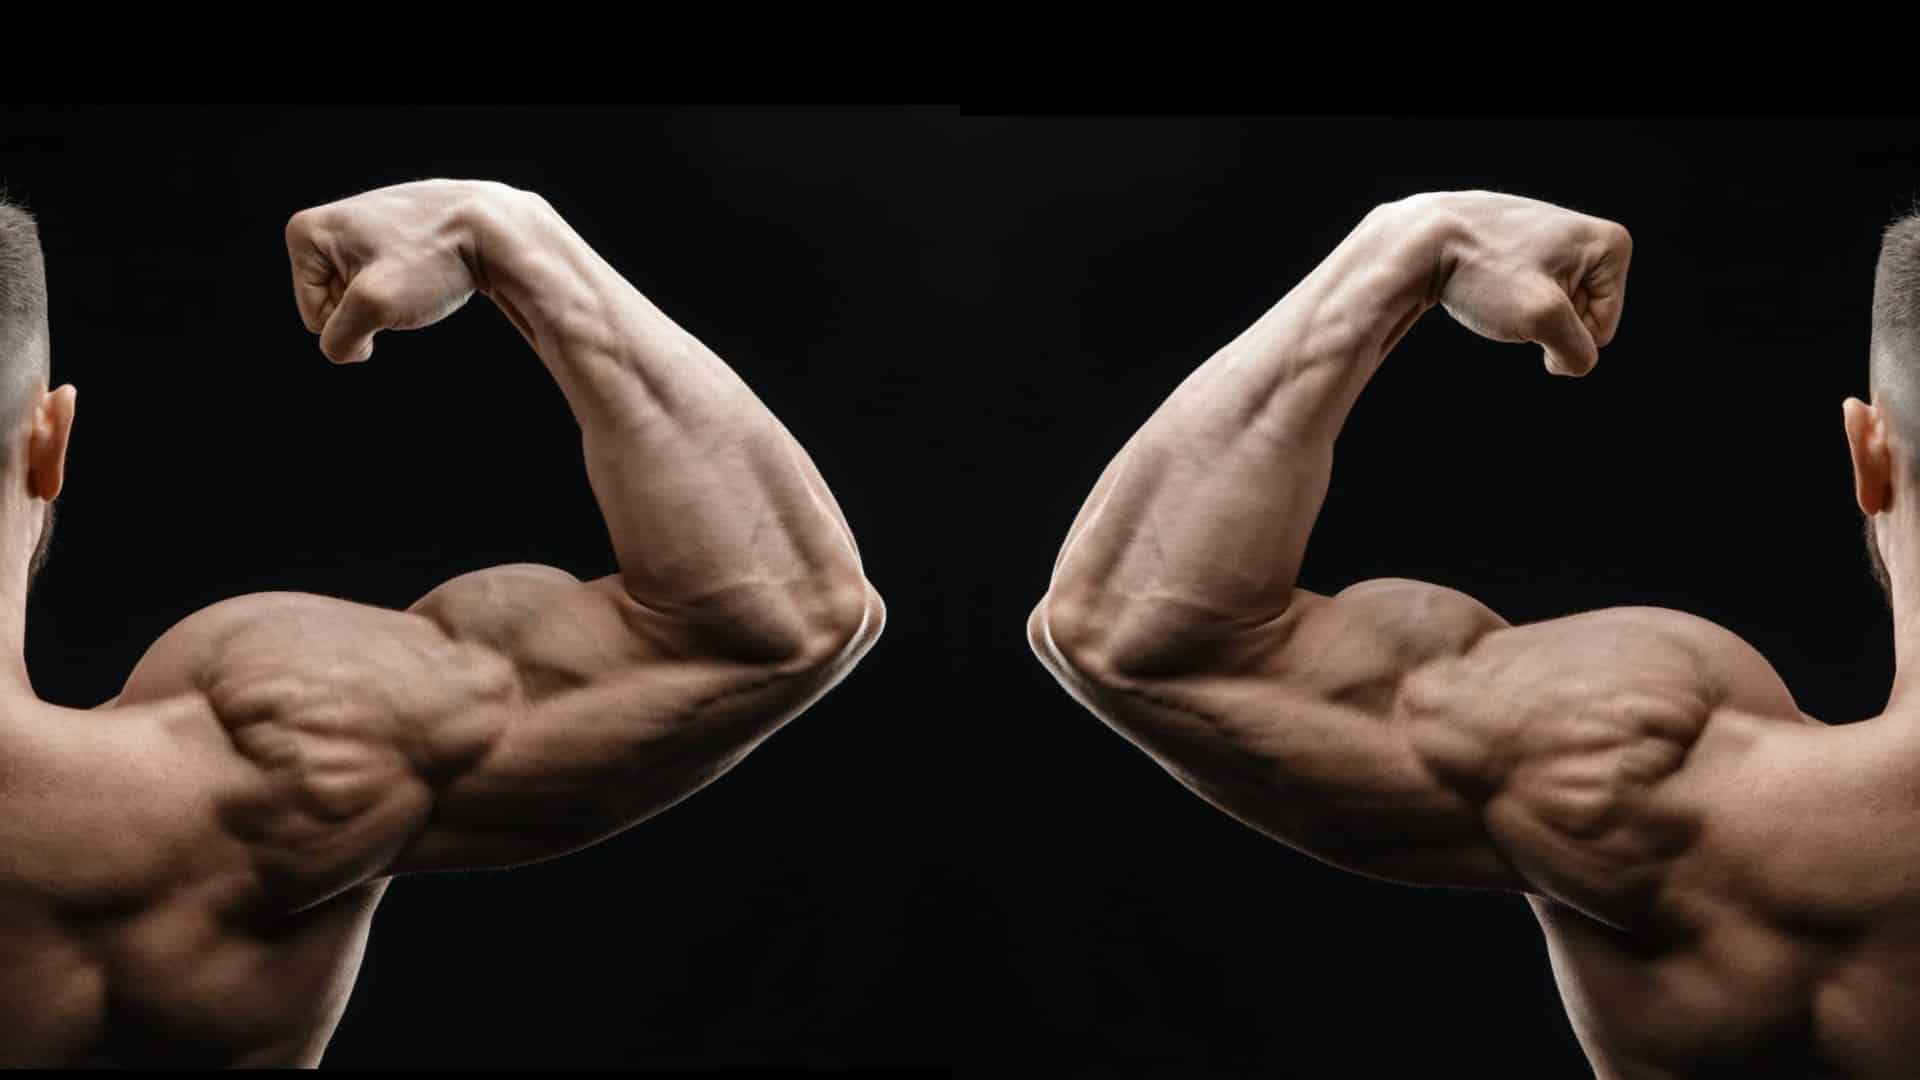 Posterior deltoid exercises for Bigger Shoulder